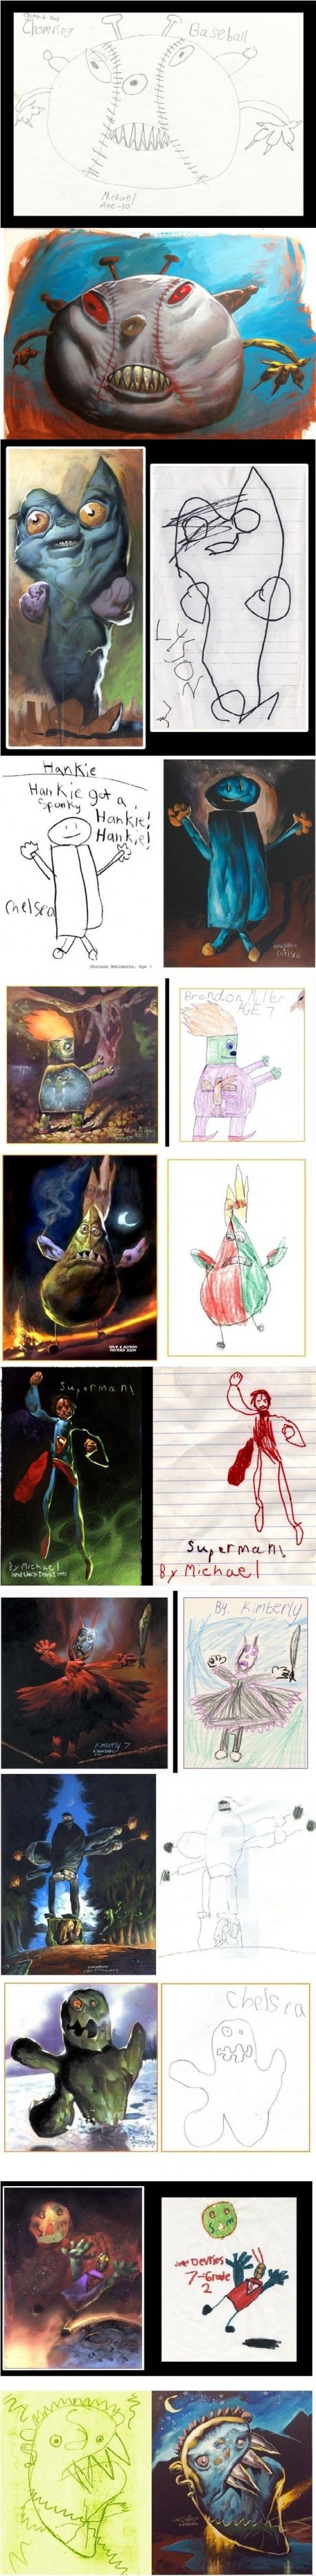 Children's art drawn realistically.